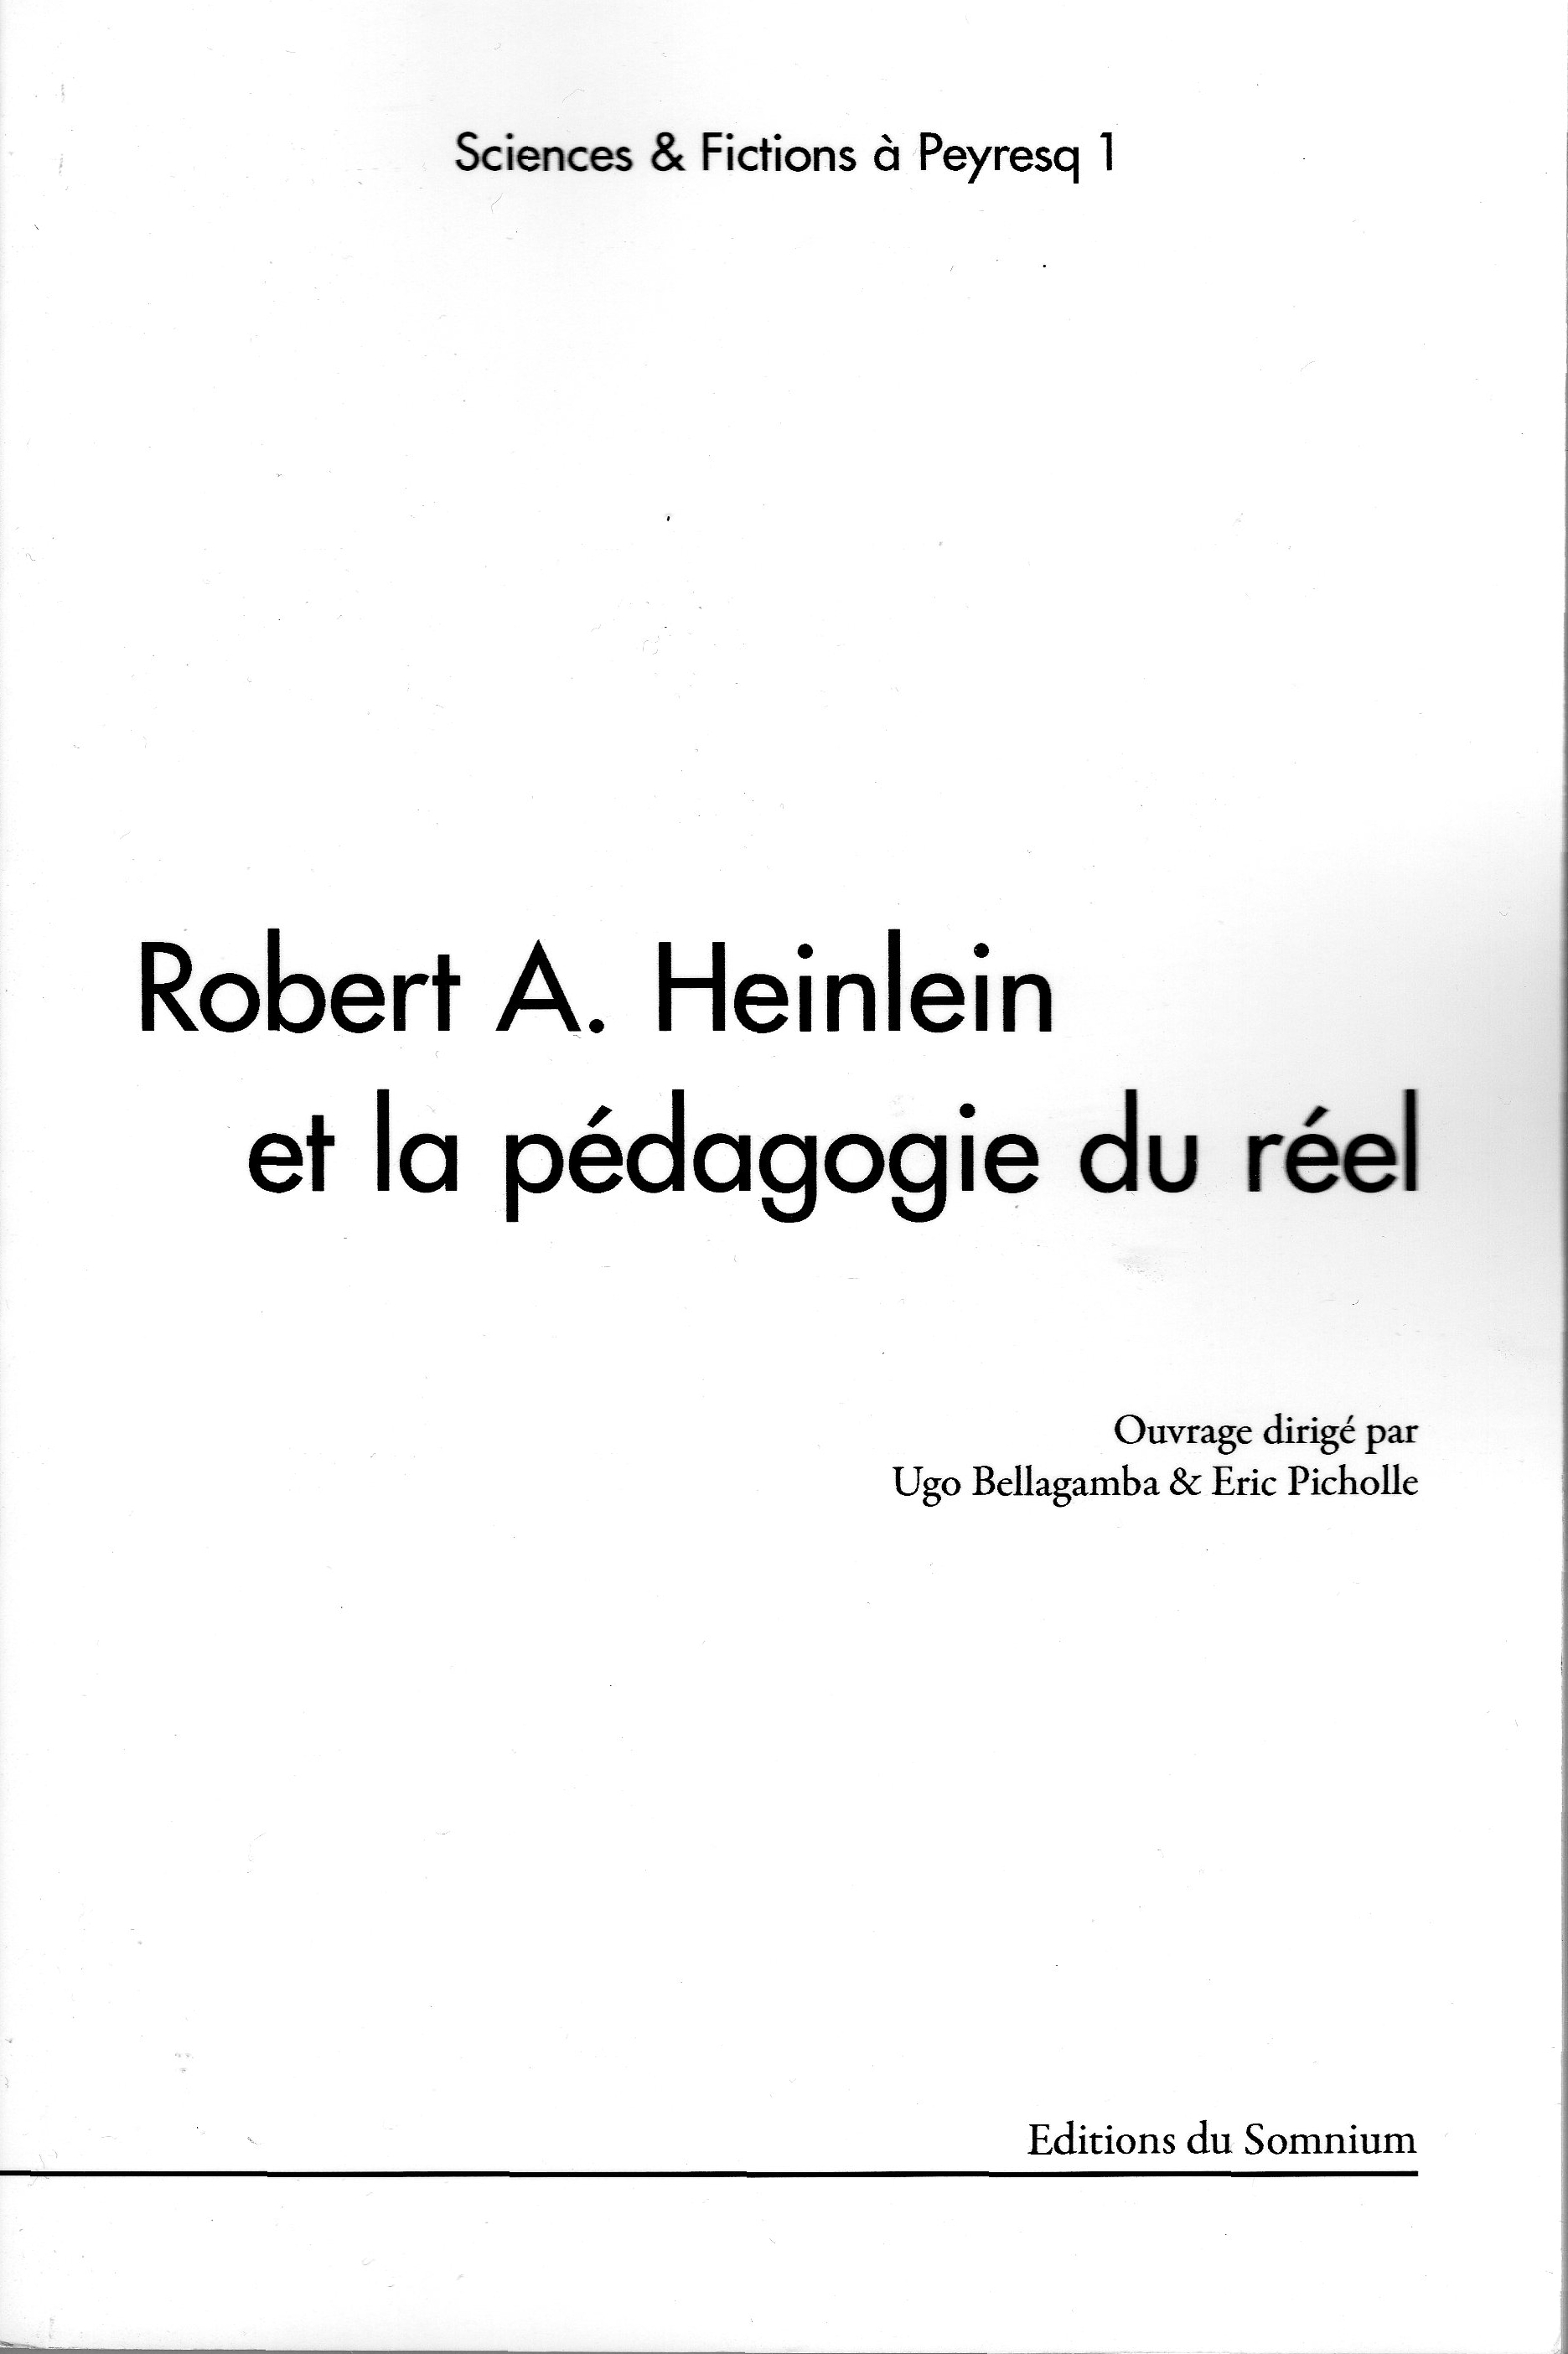 <p>Couverture de Robert A. Heinlein et la pédagogie du réel, Editions du Somnium, mai 2008.<br />Actes des premières journées interdisciplinaires Sciences et Fictions de Peyresq, 2007.</p>